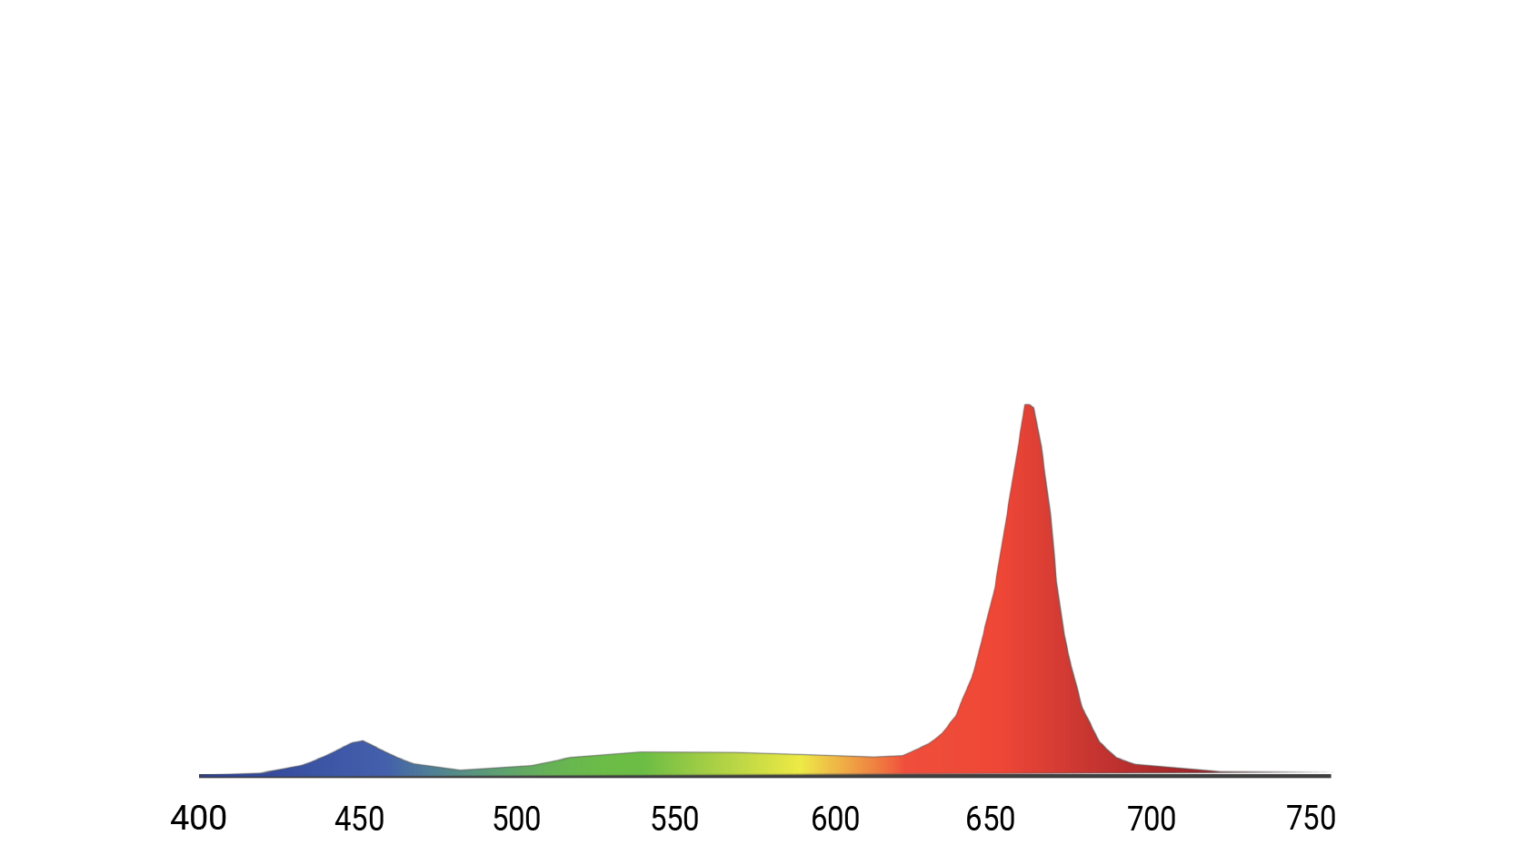 Ceres spectrum, R80